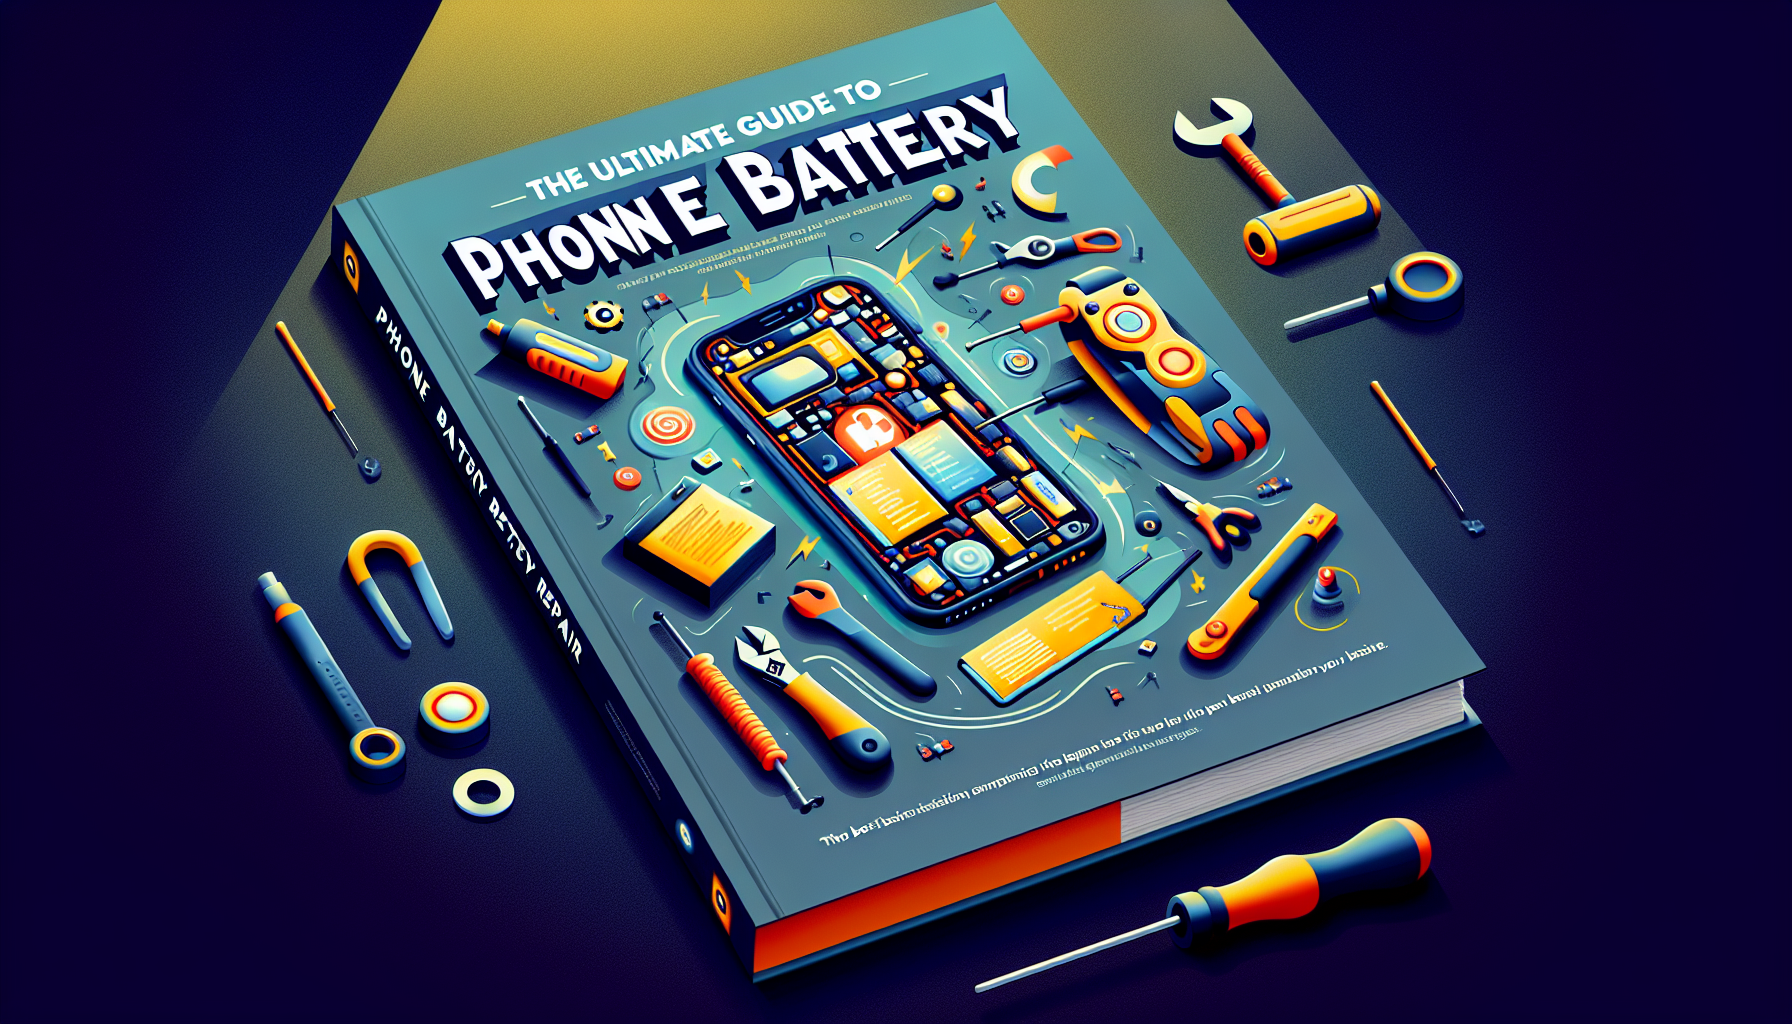 trouvez où faire réparer la batterie de votre téléphone portable avec nos services de réparation de batteries pour téléphones portables.